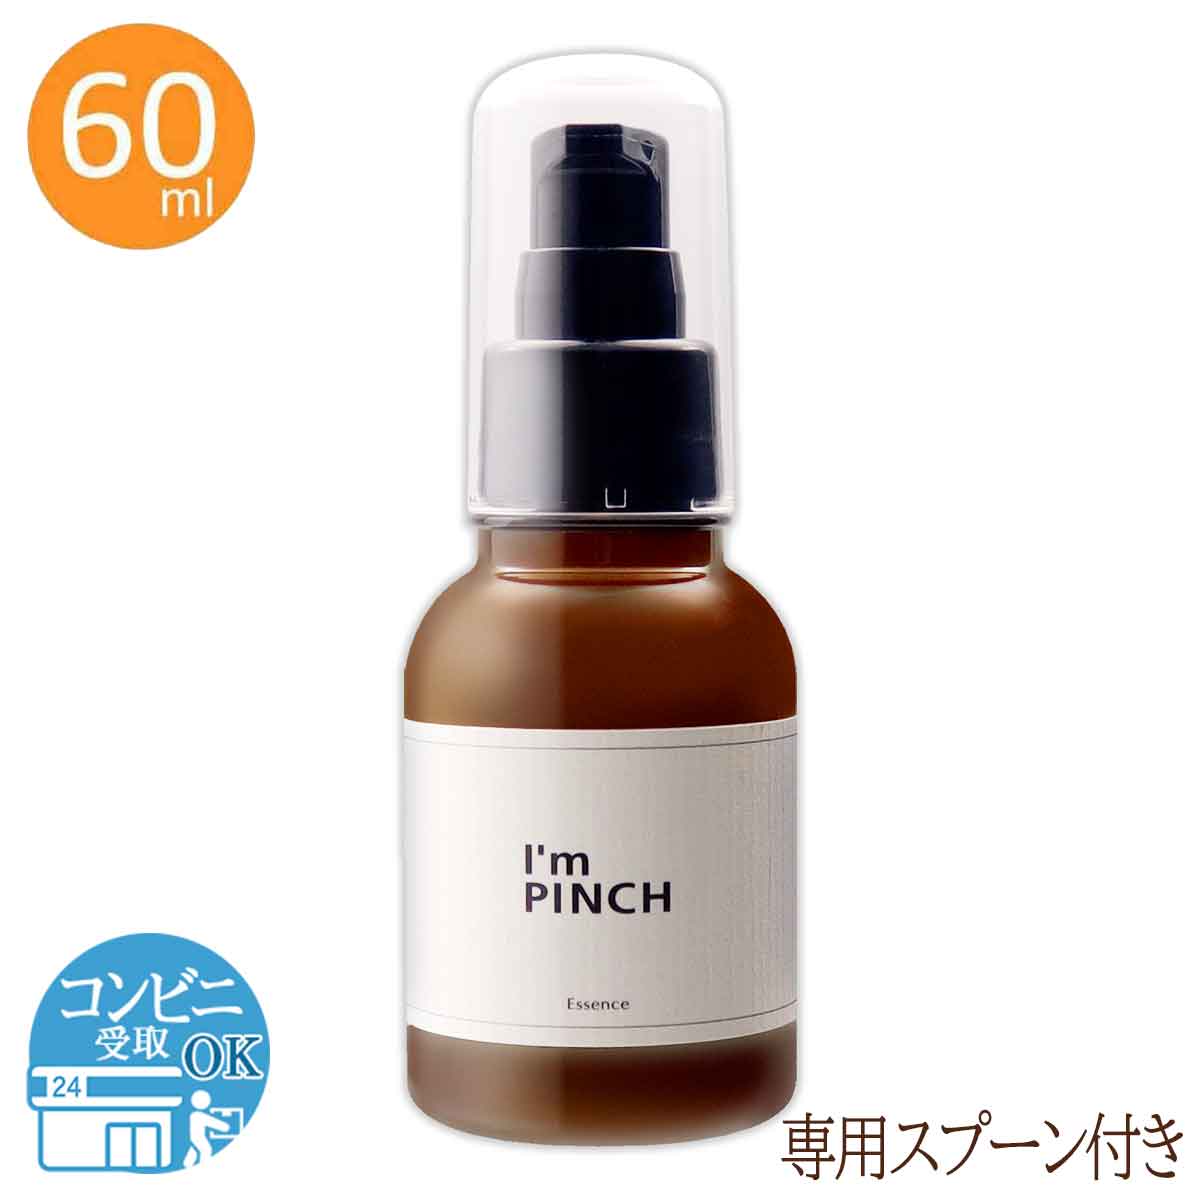 スキンケア/基礎化粧品I’m pich 美容液